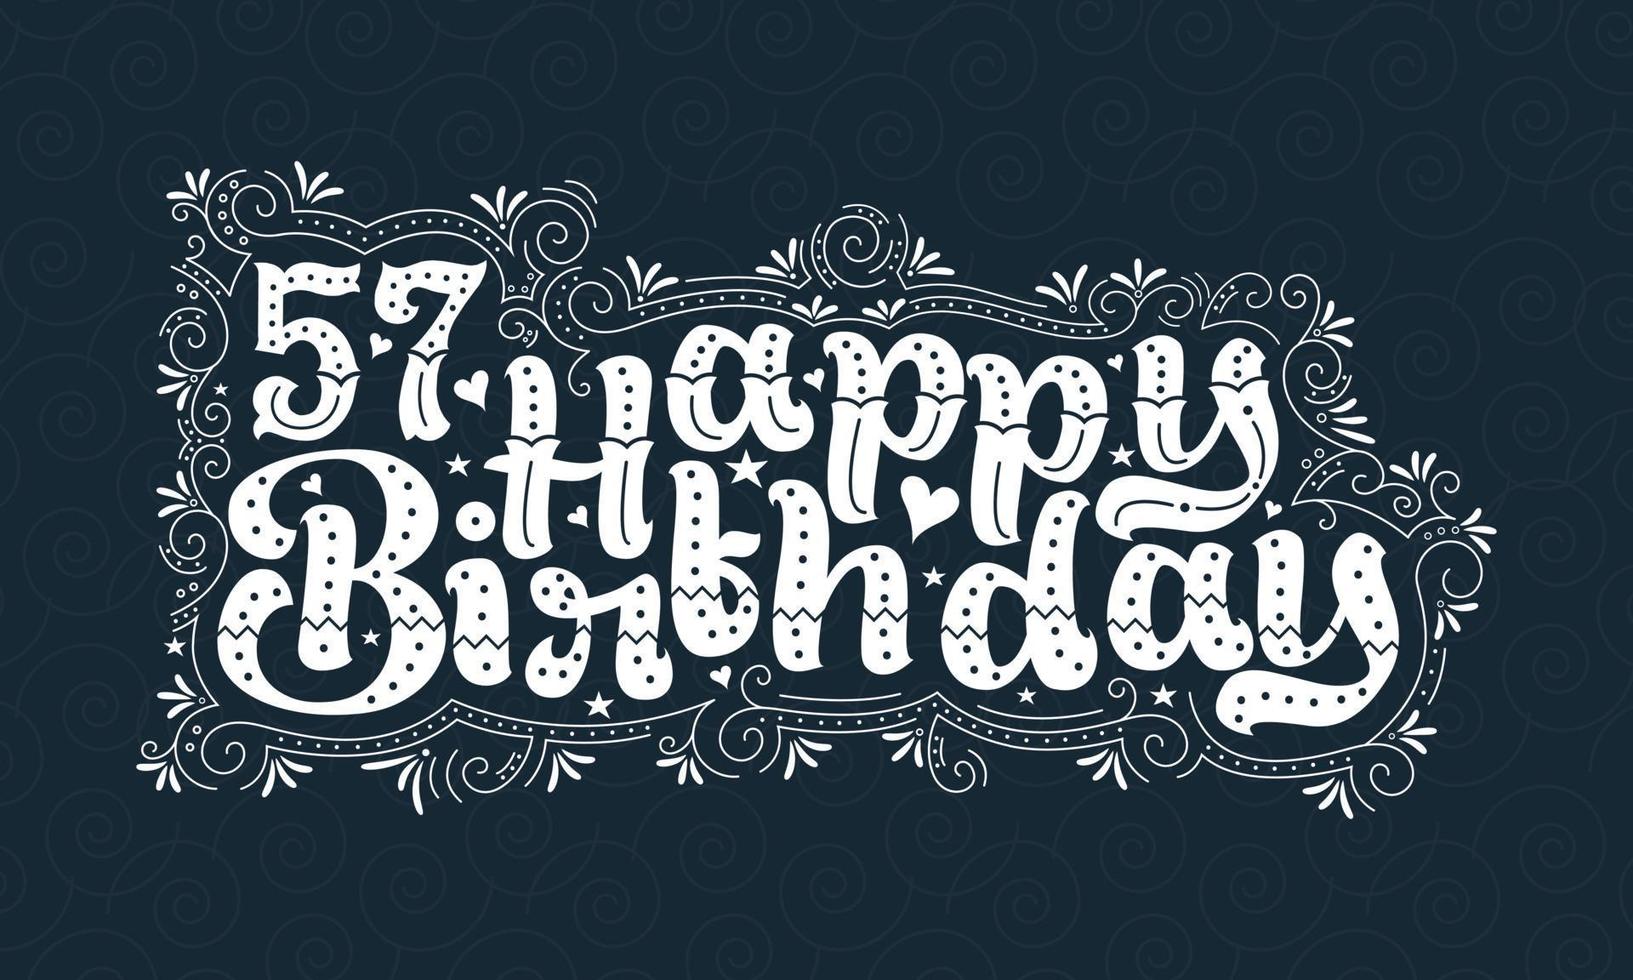 57:e födelsedag bokstäver, 57 år födelsedag vacker typografi design med prickar, linjer och blad. vektor